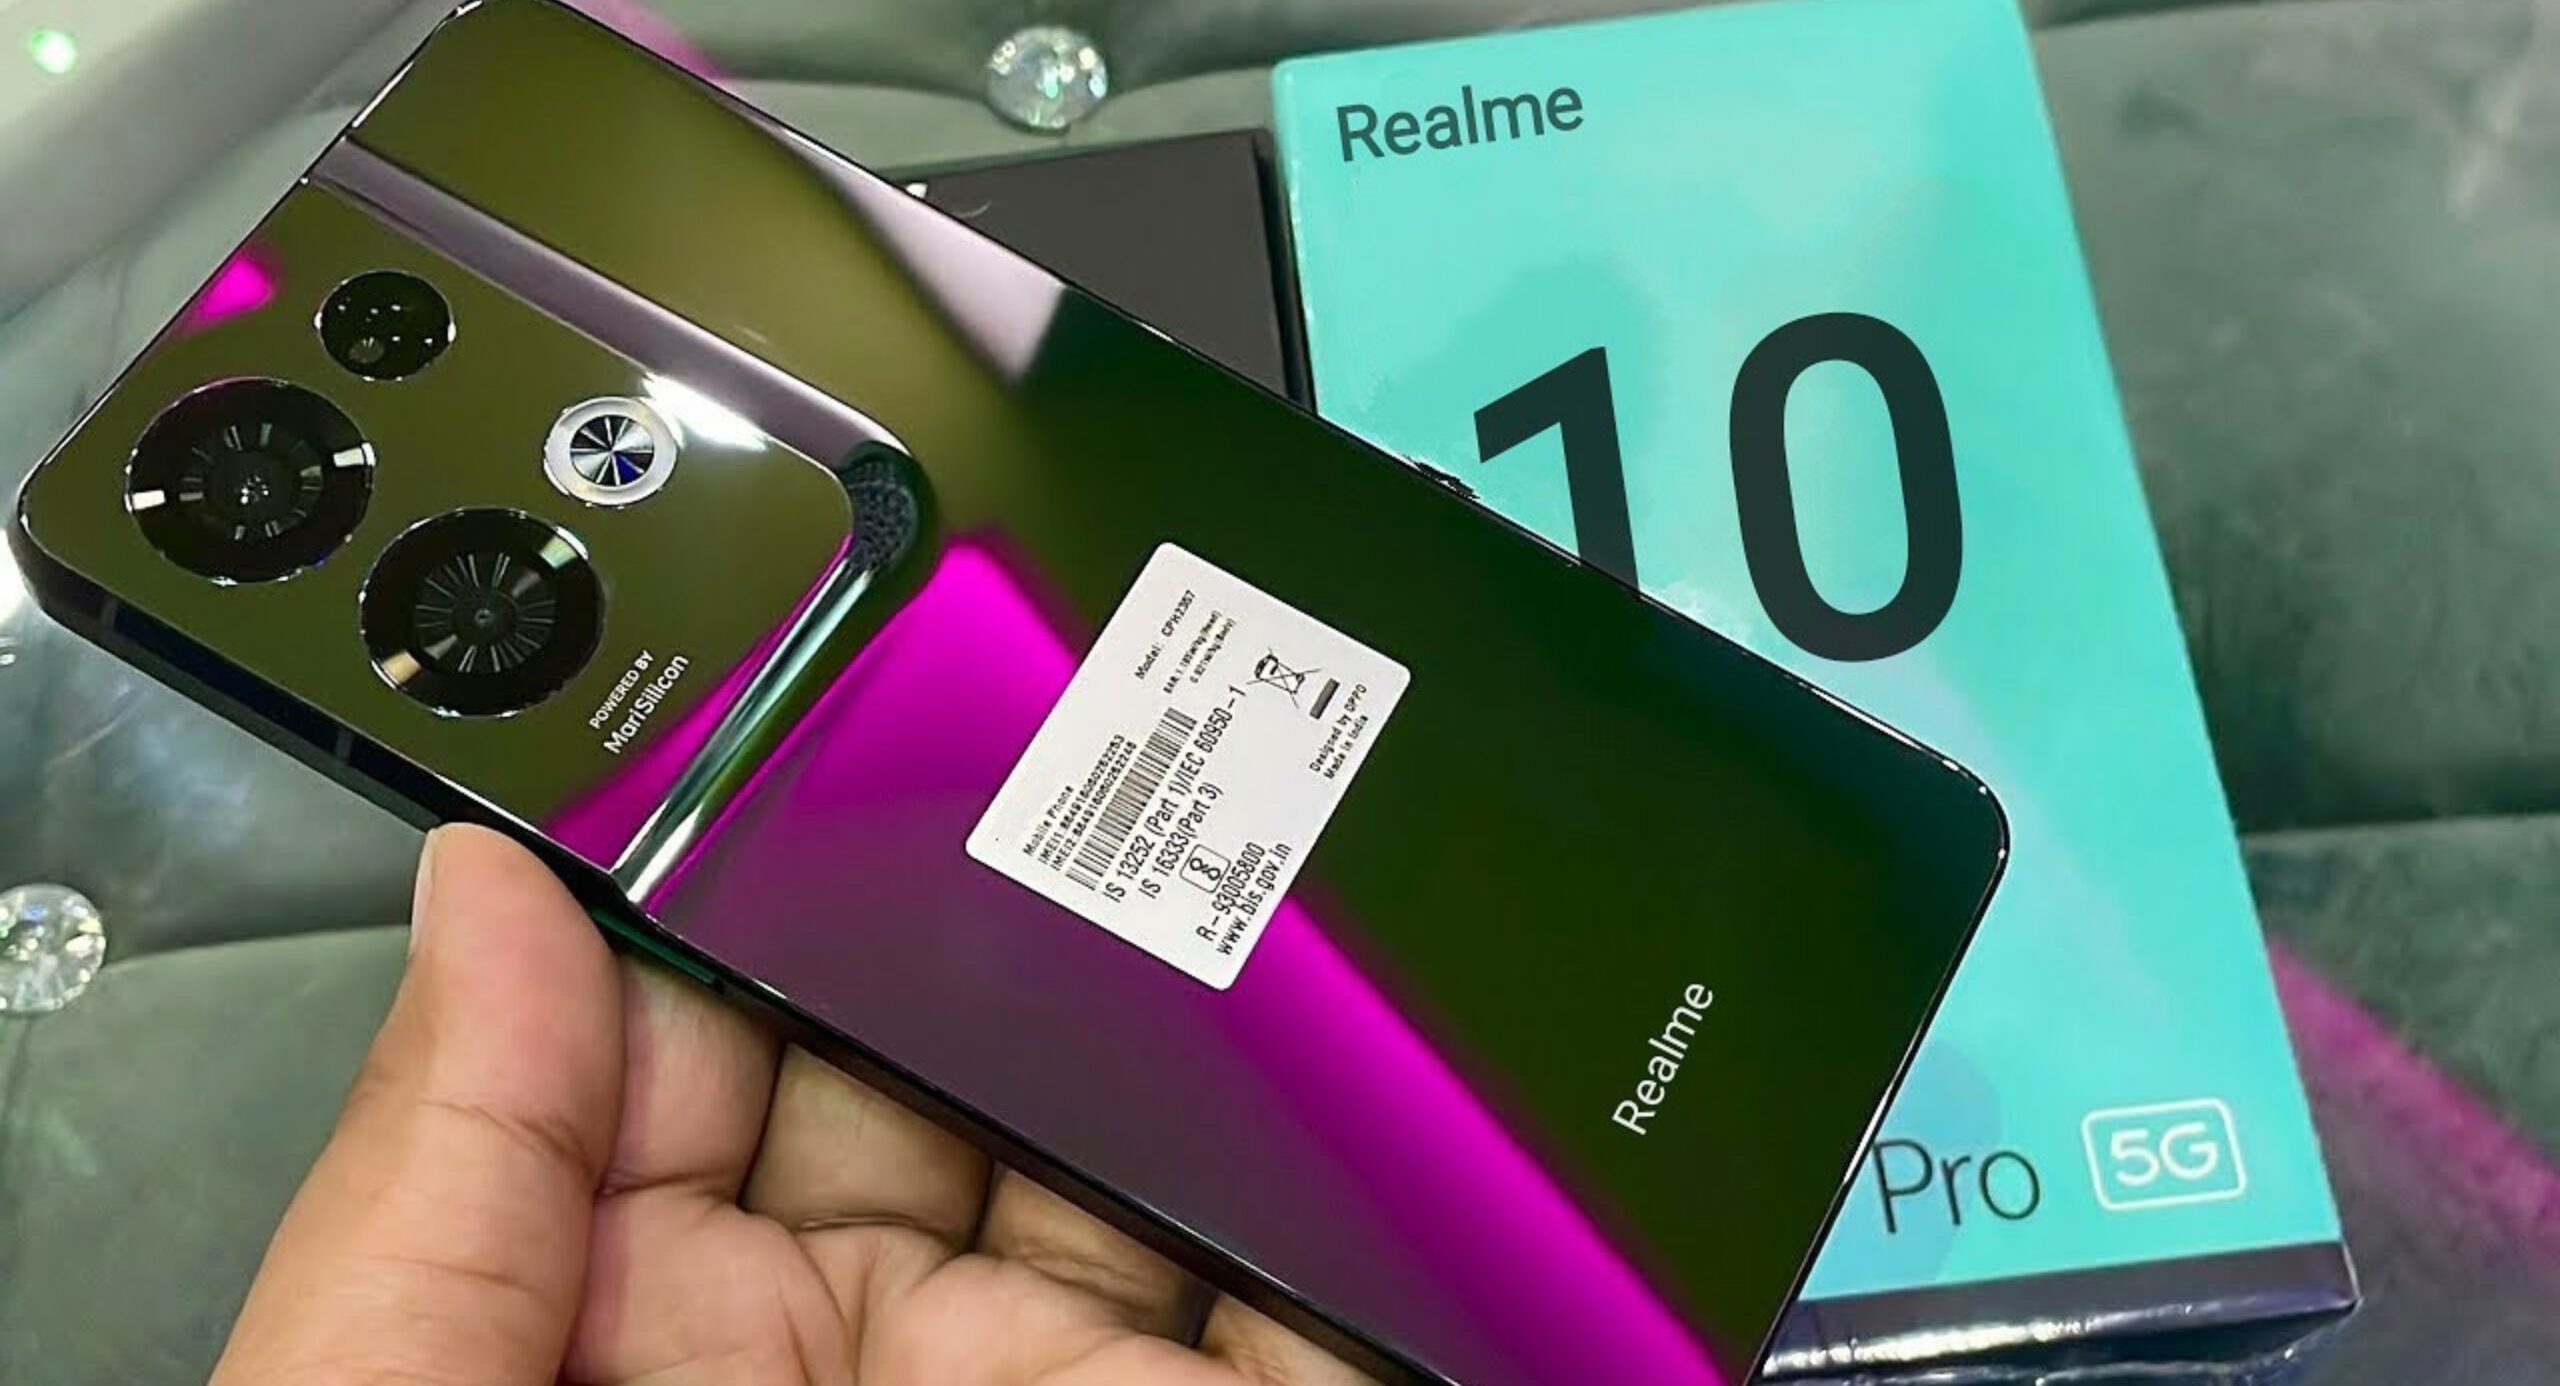 108MP के कैमरे के साथ DSLR की वाट लगाने लॉन्च हुआ Realme का धांसू 5G स्मार्टफोन, डैशिंग लुक ने जीता लोगों का दिल